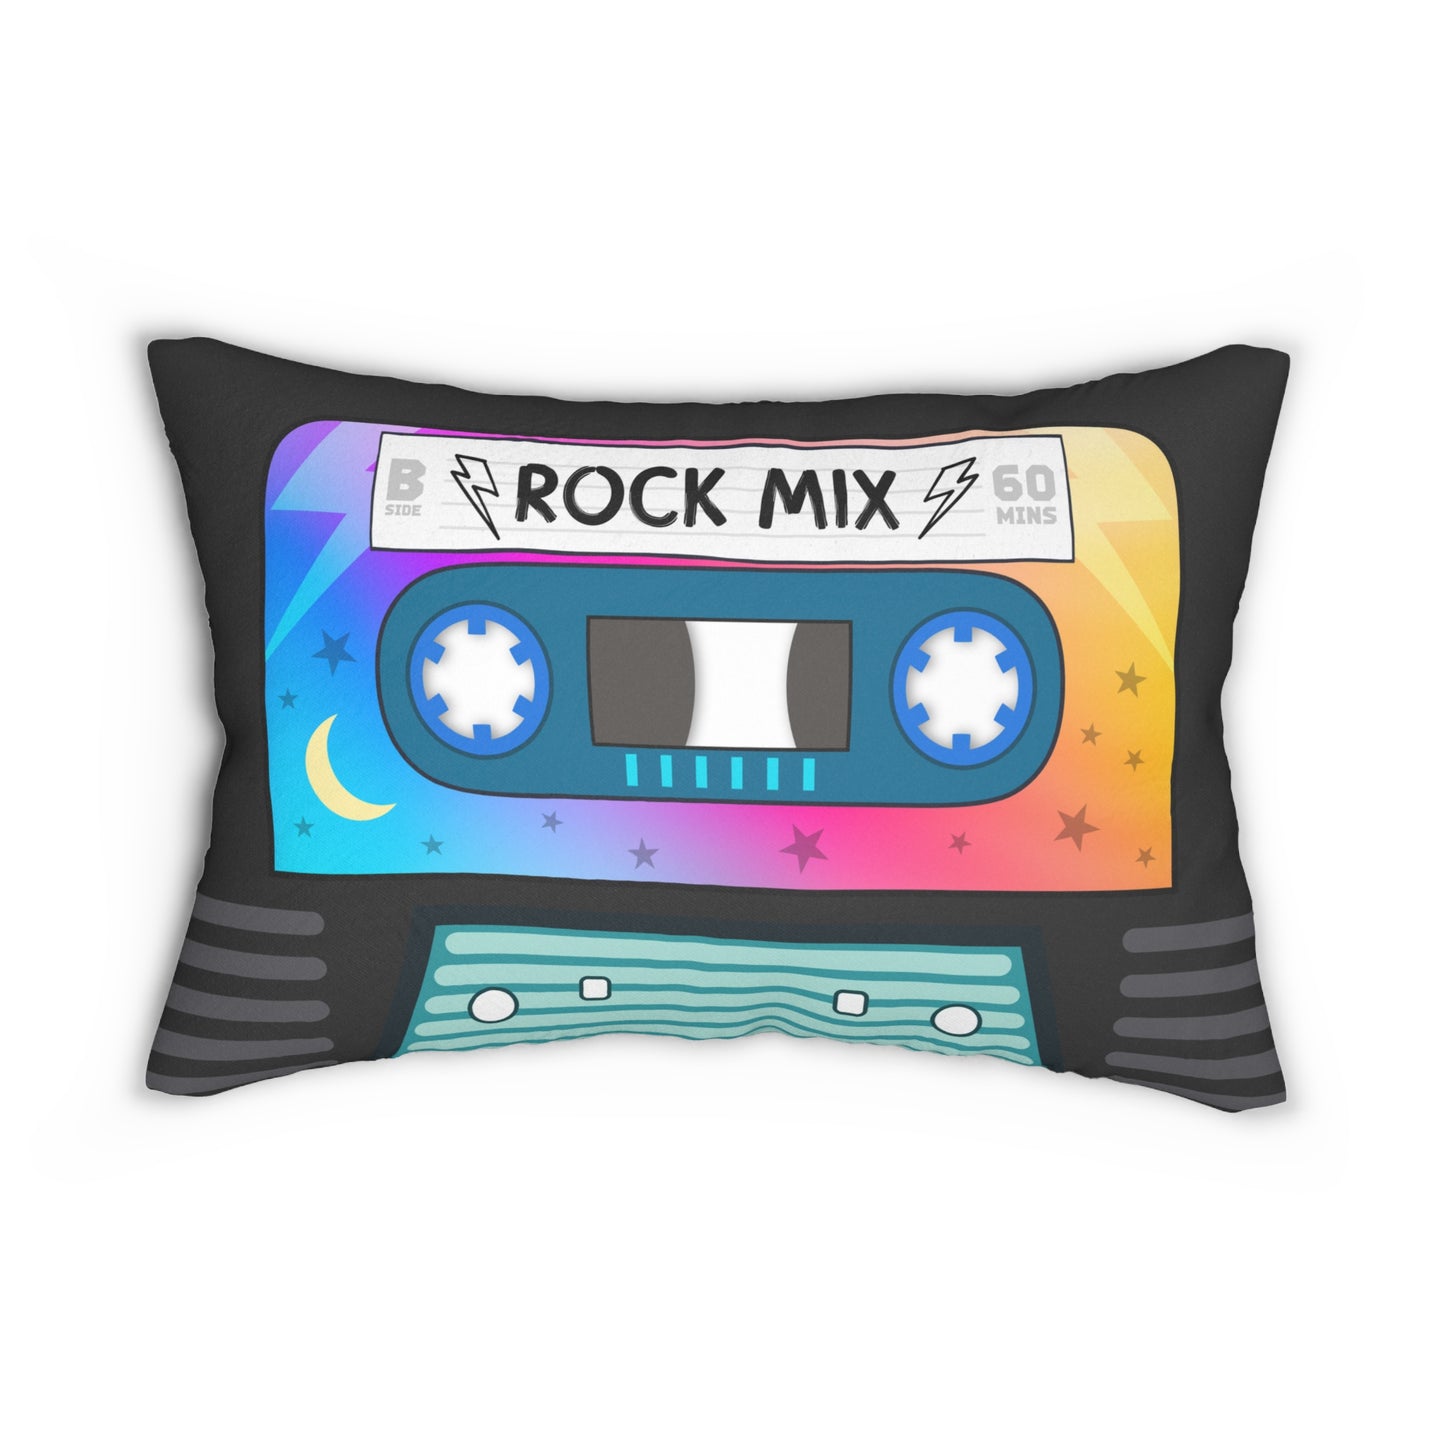 Mix Tape Pillow - Rock Mix